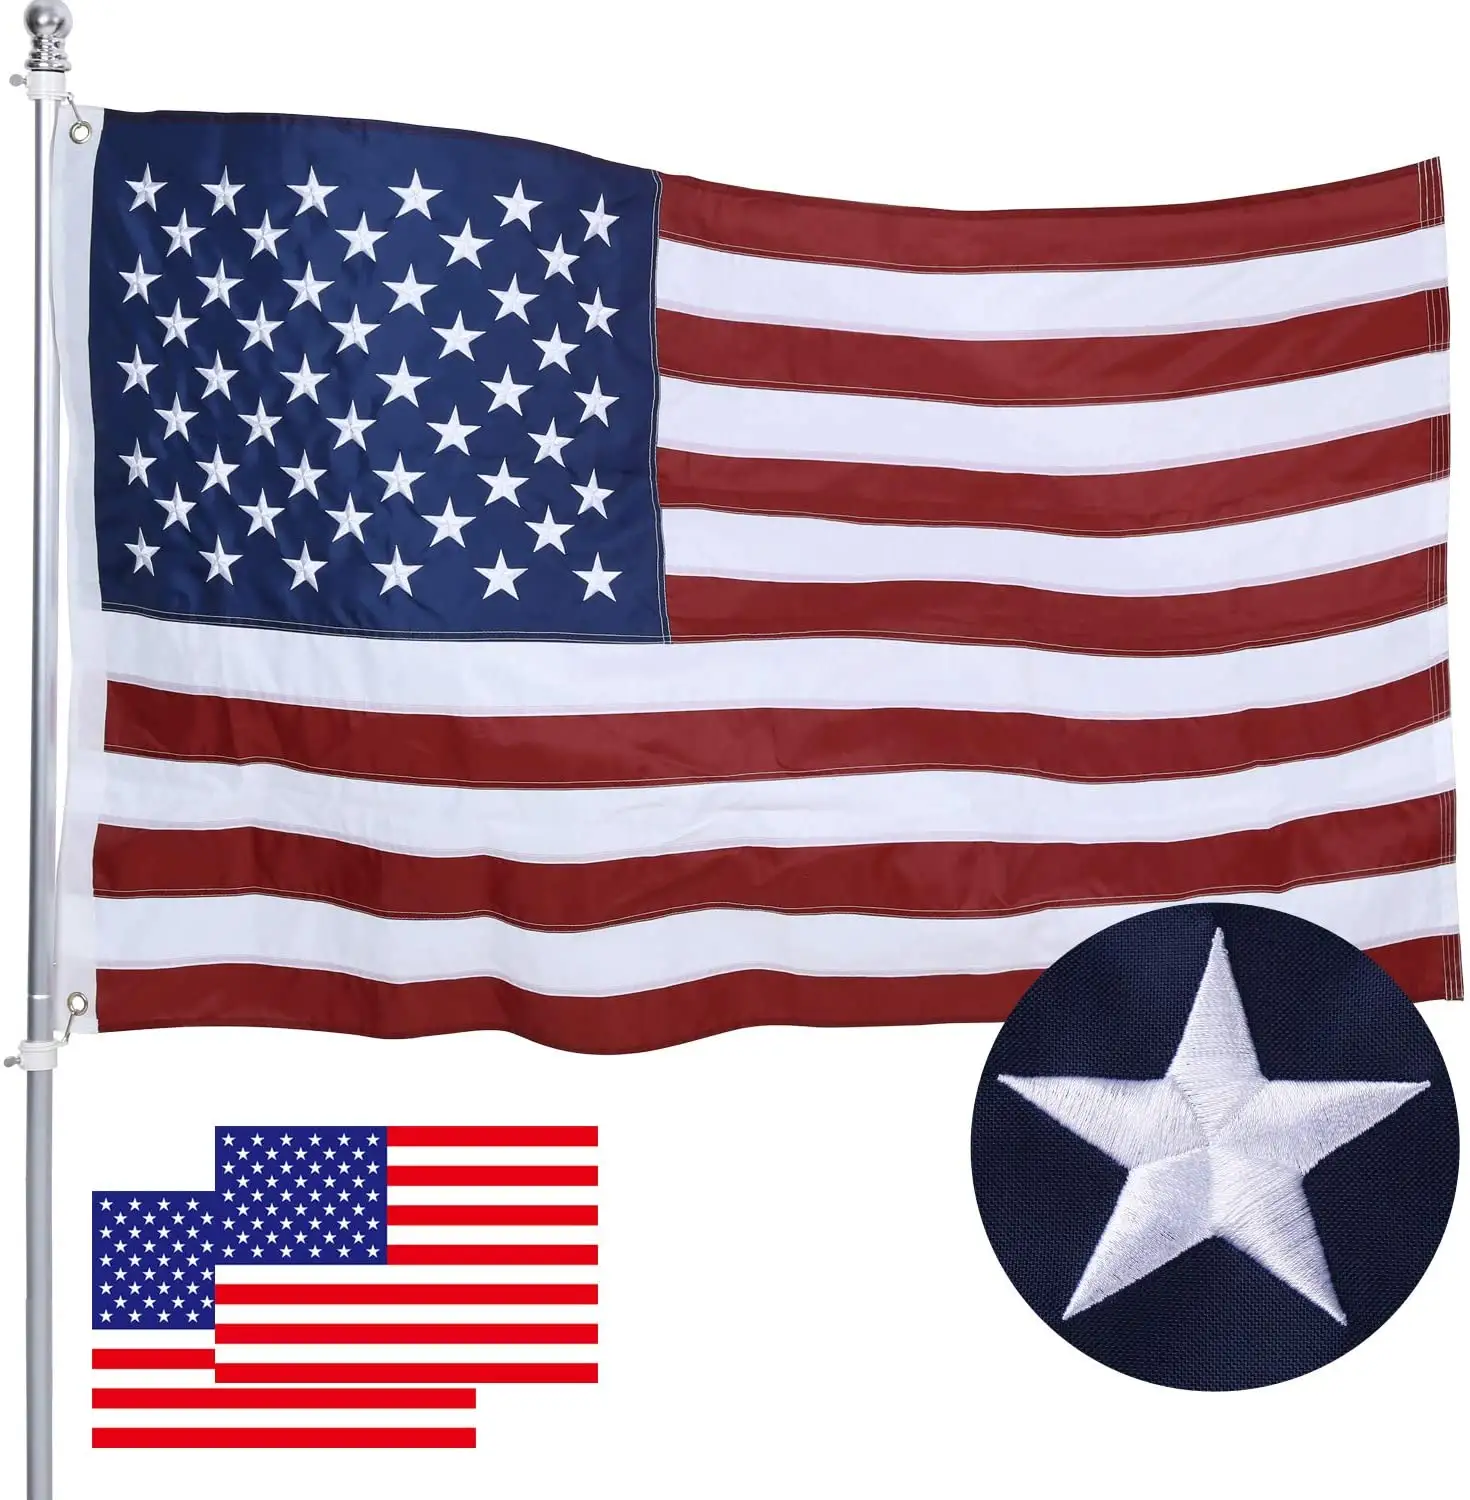 أعلام أمريكية من 3x5 لخارج الولايات المتحدة الأمريكية, أعلام ديلوكس مطرزة نجوم ، أعلام متينة بألوان زاهية ، شرائط مخيطة من النحاس الأصفر